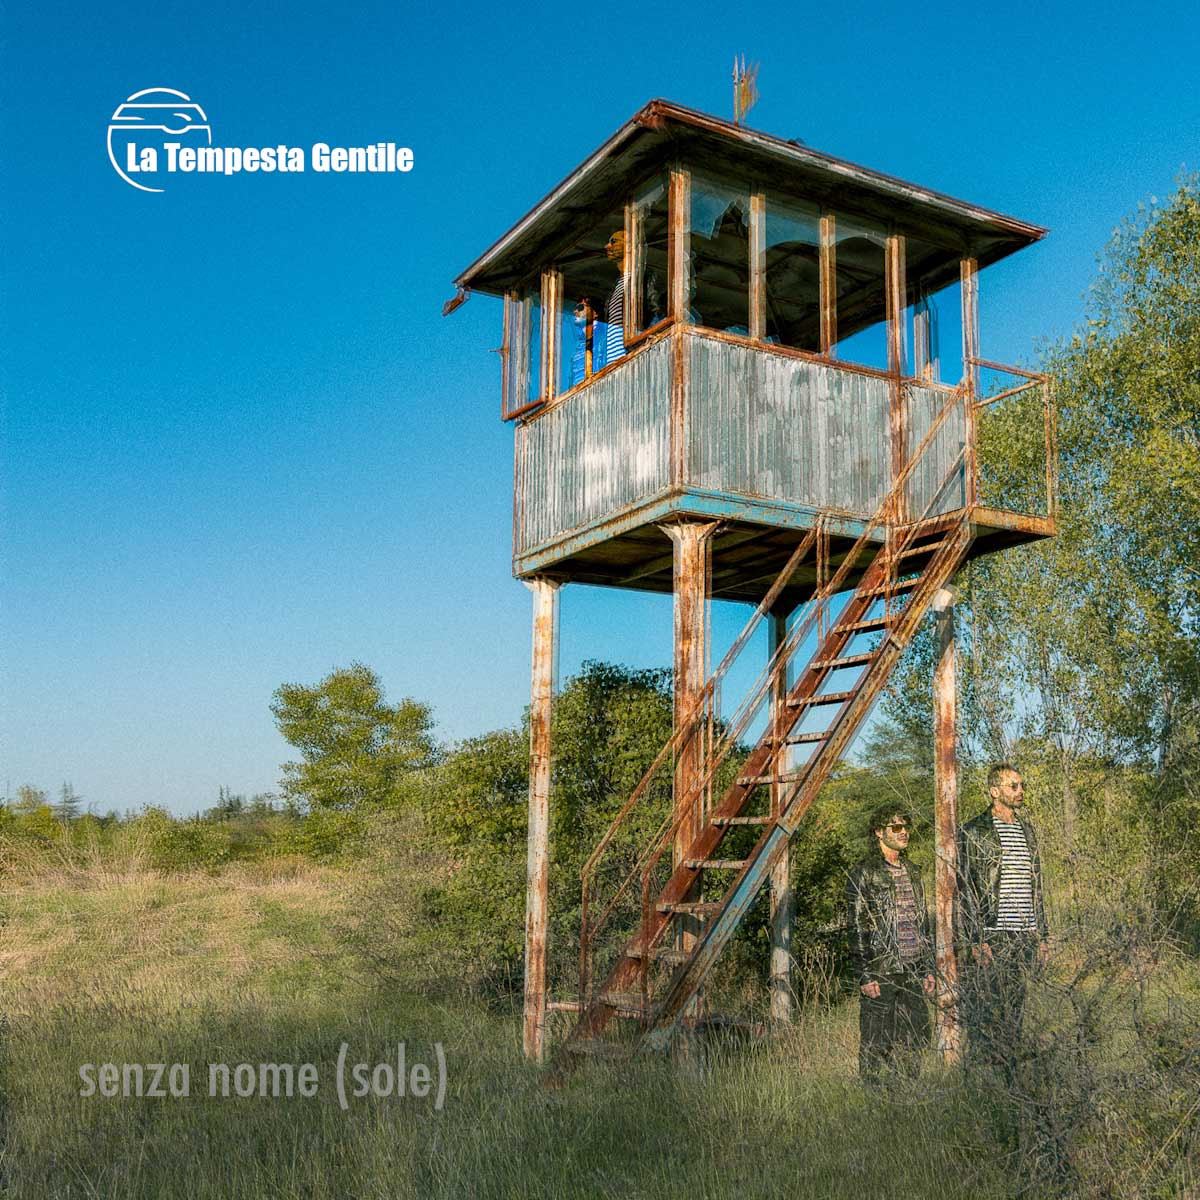 In rotazione radiofonica “Senza Nome (Sole)”, il nuovo singolo de La Tempesta Gentile, già disponibile sulle piattaforme digitali dal 6 marzo